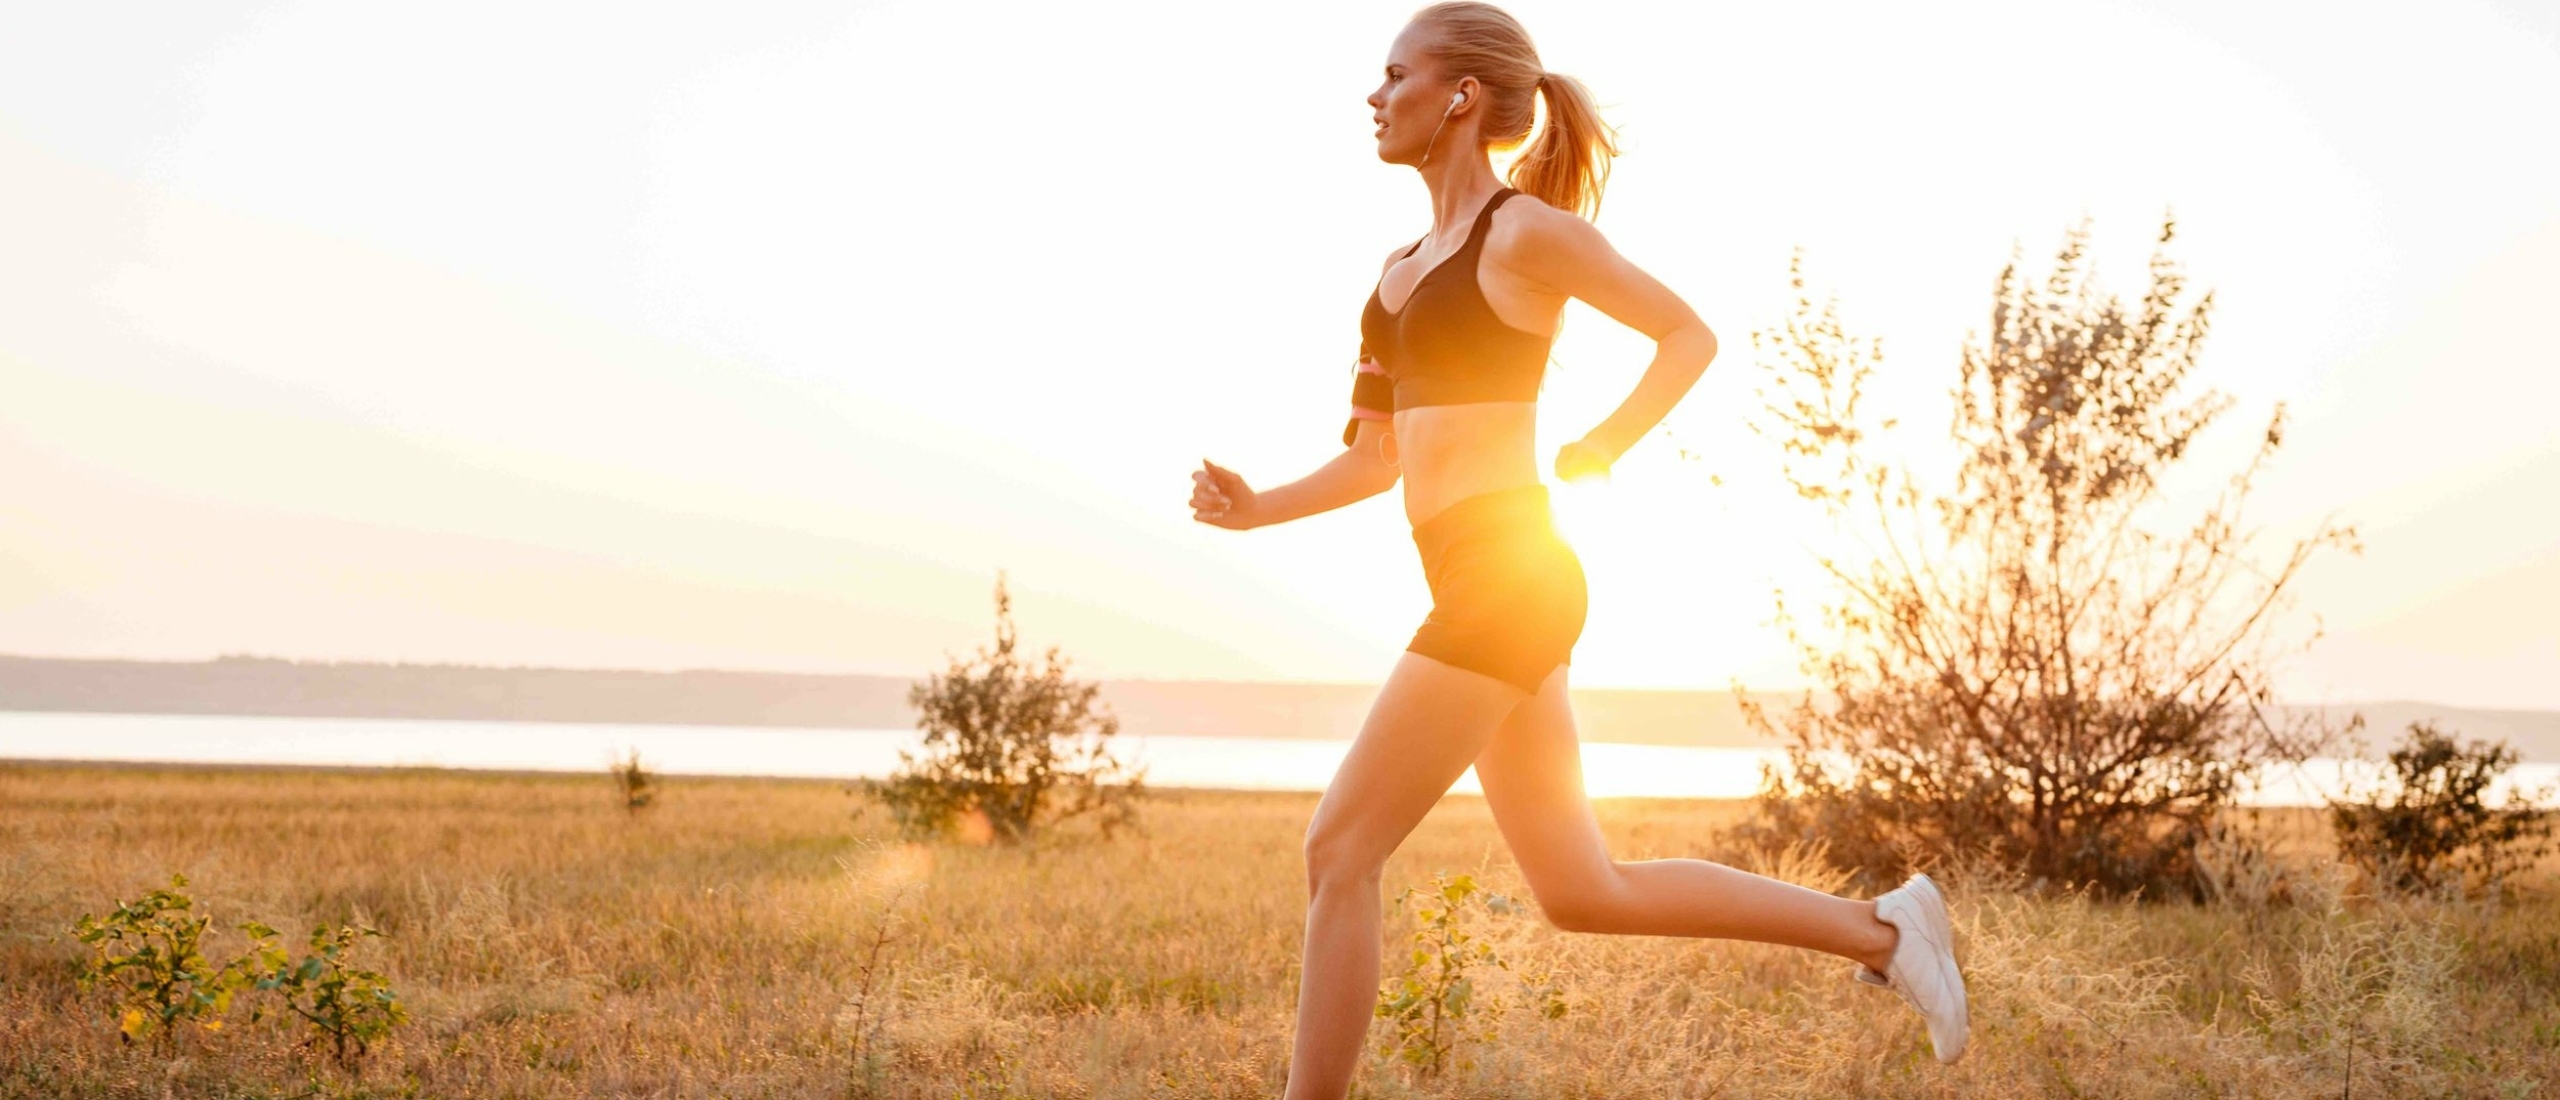 Is hardlopen slecht voor je knieën? Waarom hardlopen juist goed is voor je knieën?